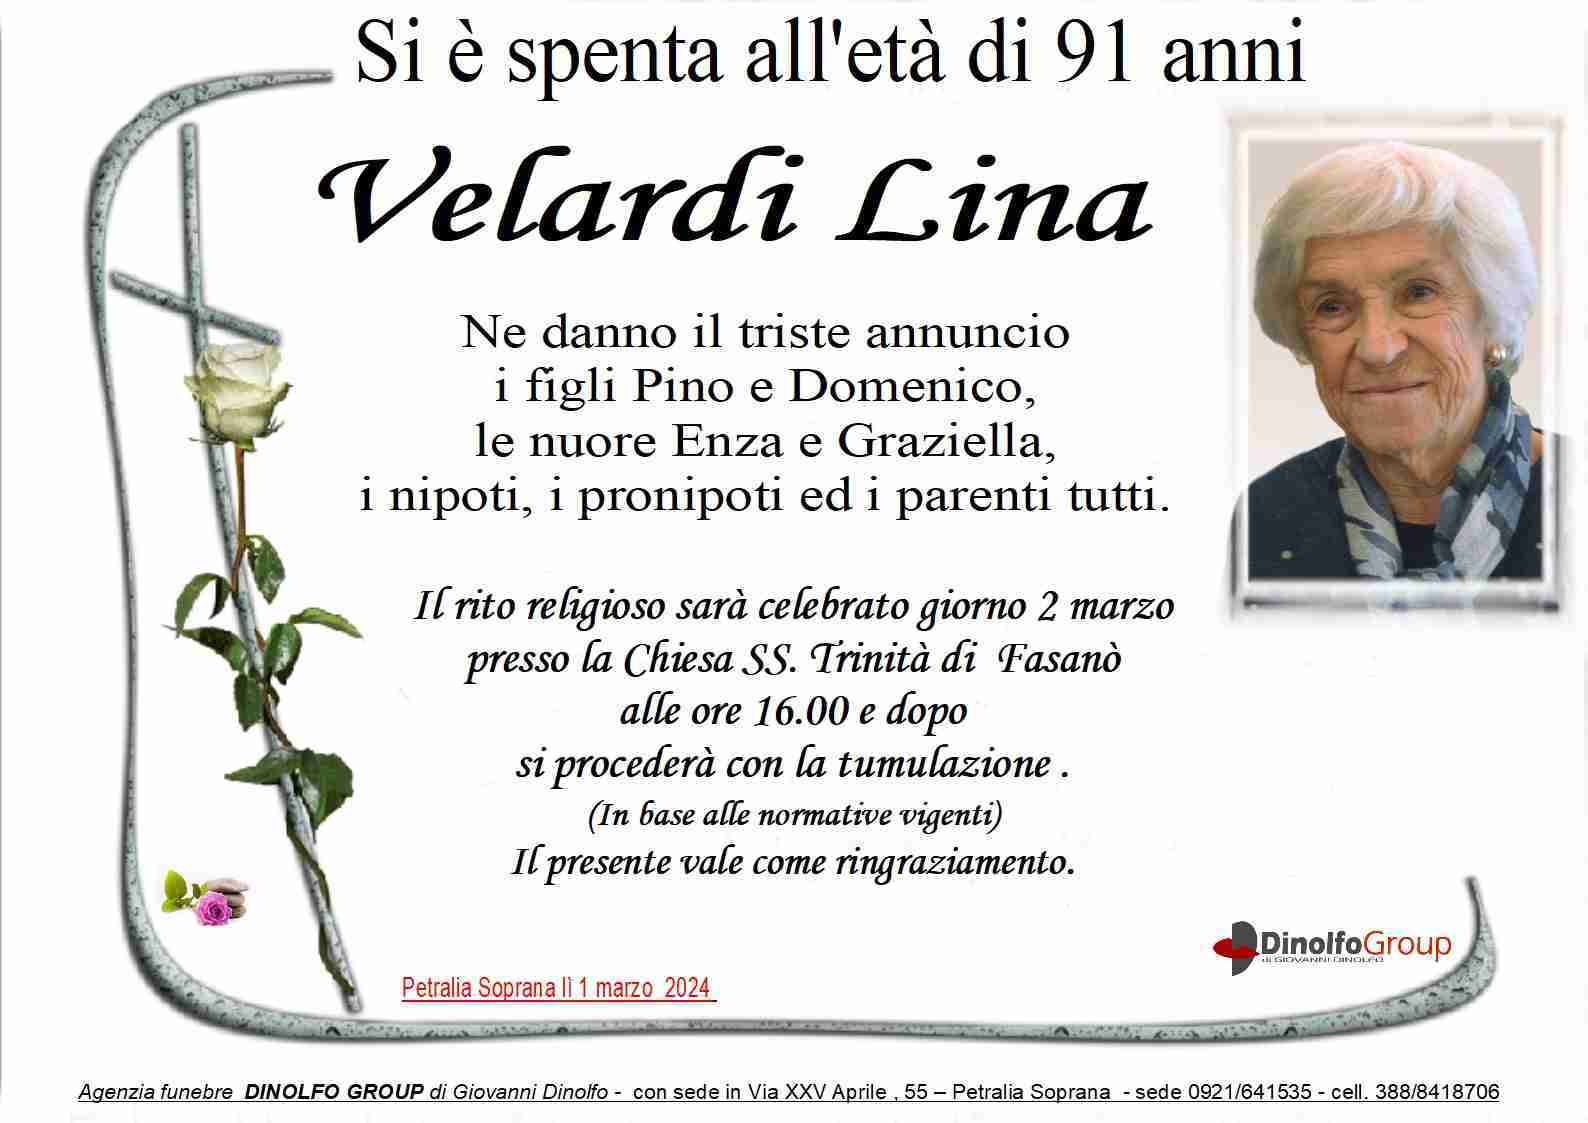 Lina Velardi